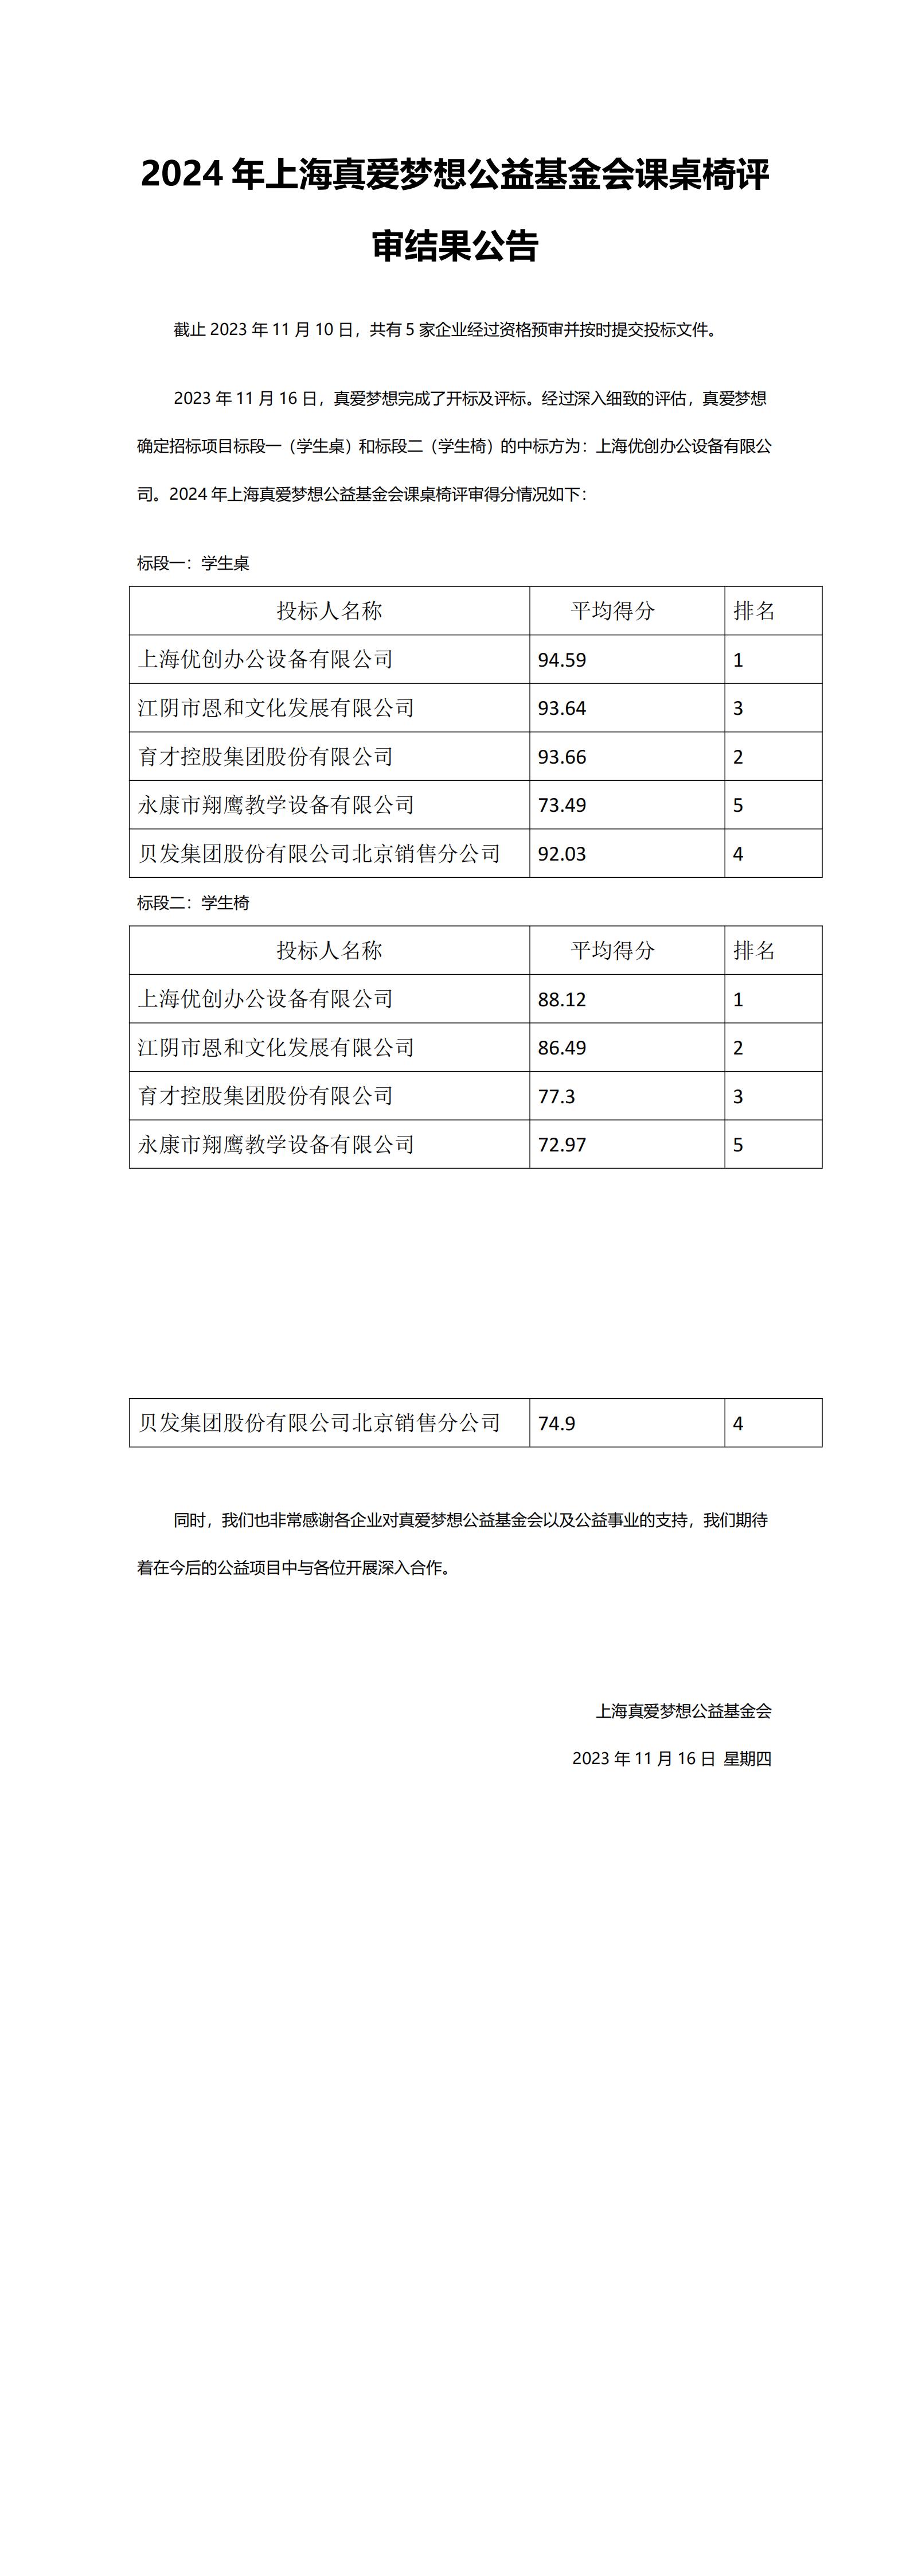 采购招标结果公告-2024年上海真爱梦想公益基金会课桌椅评标_00